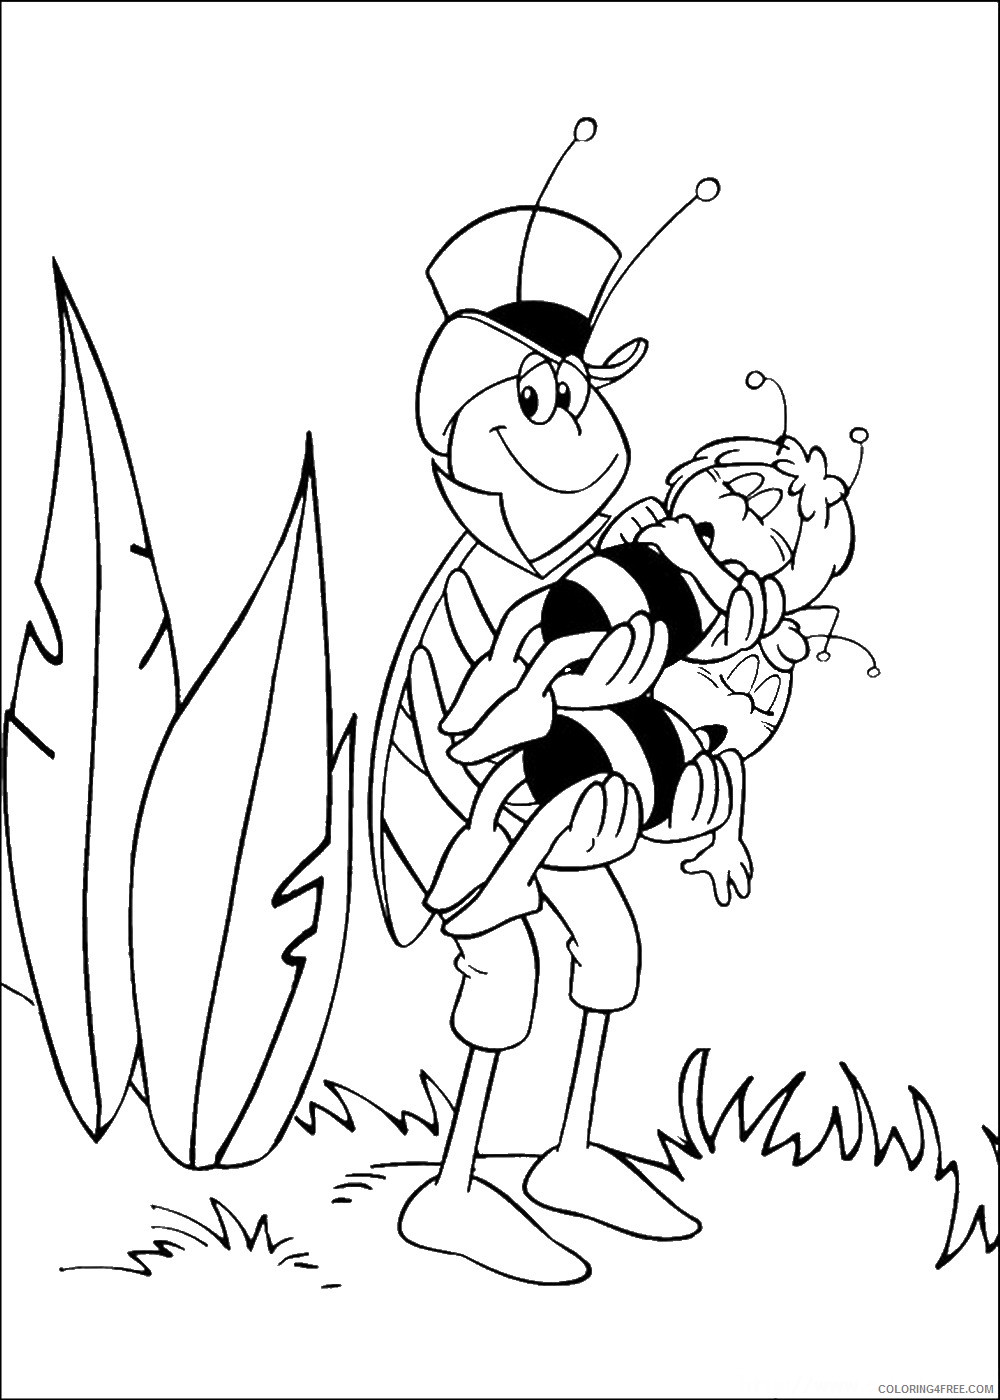 Maya the Bee Coloring Pages Cartoons maya_cl_05 Printable 2020 4004 Coloring4free